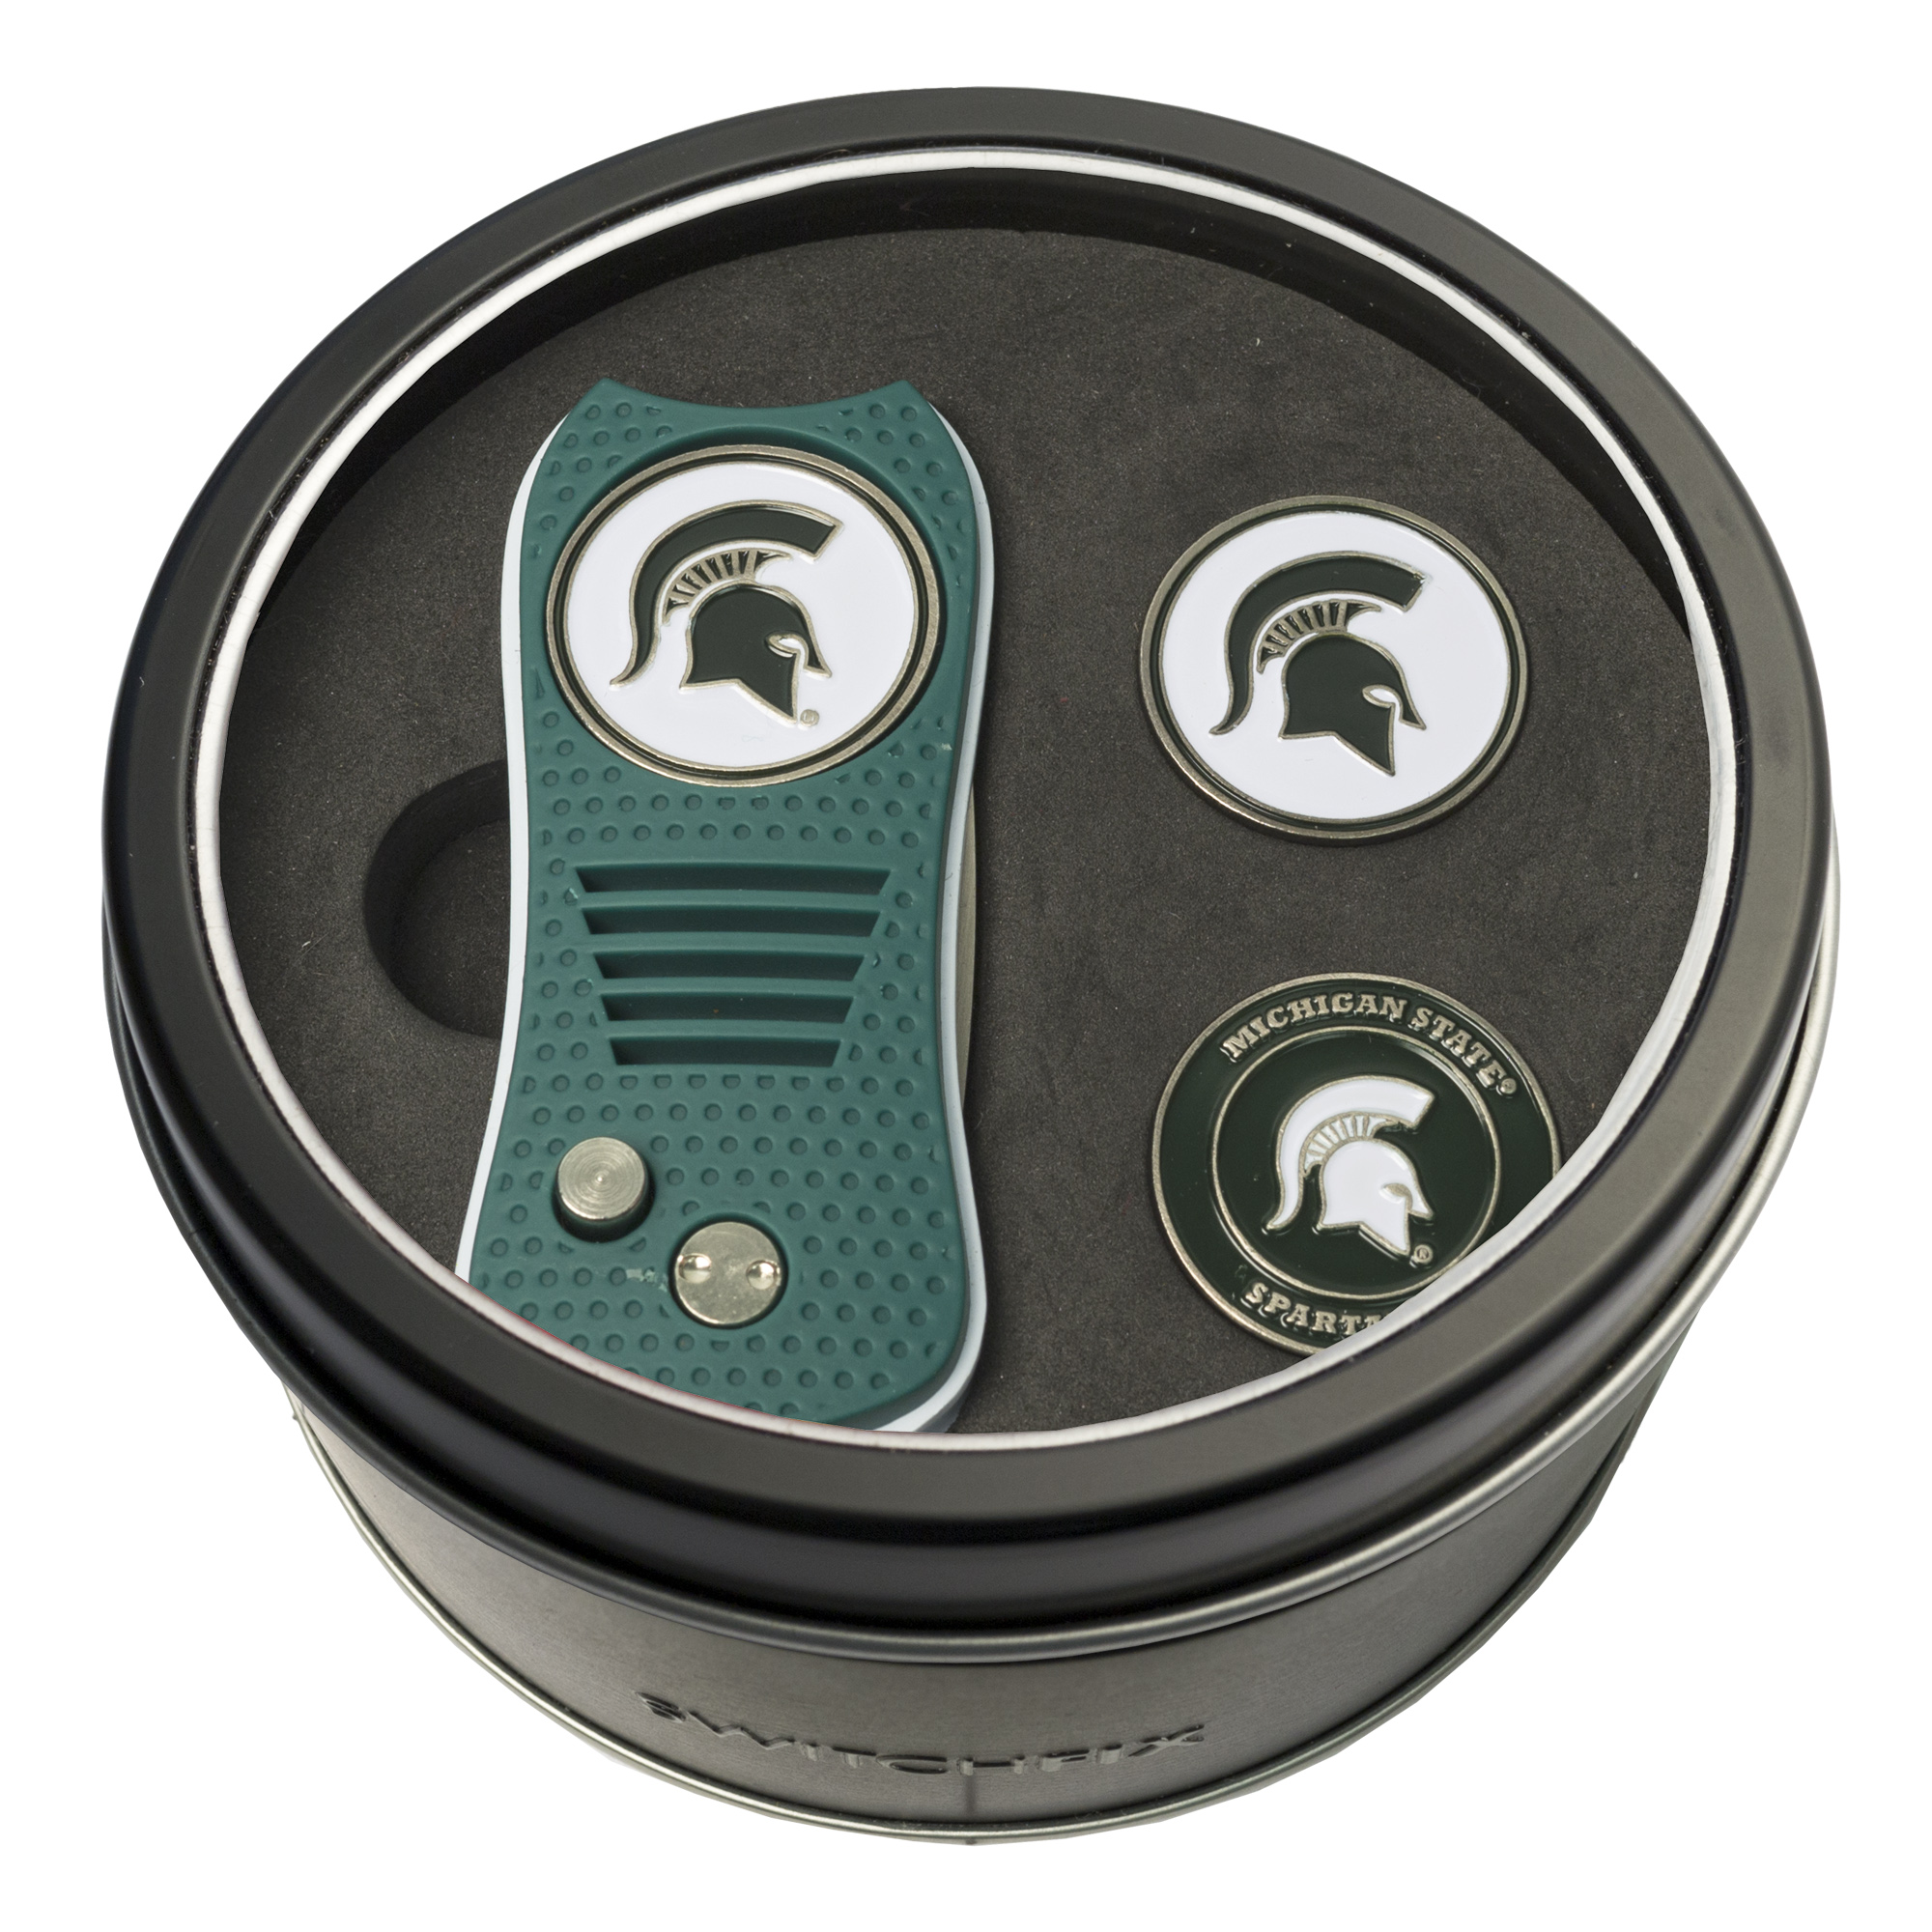 Michigan State Switchfix + 2 Ball Marker Tin Gift Set